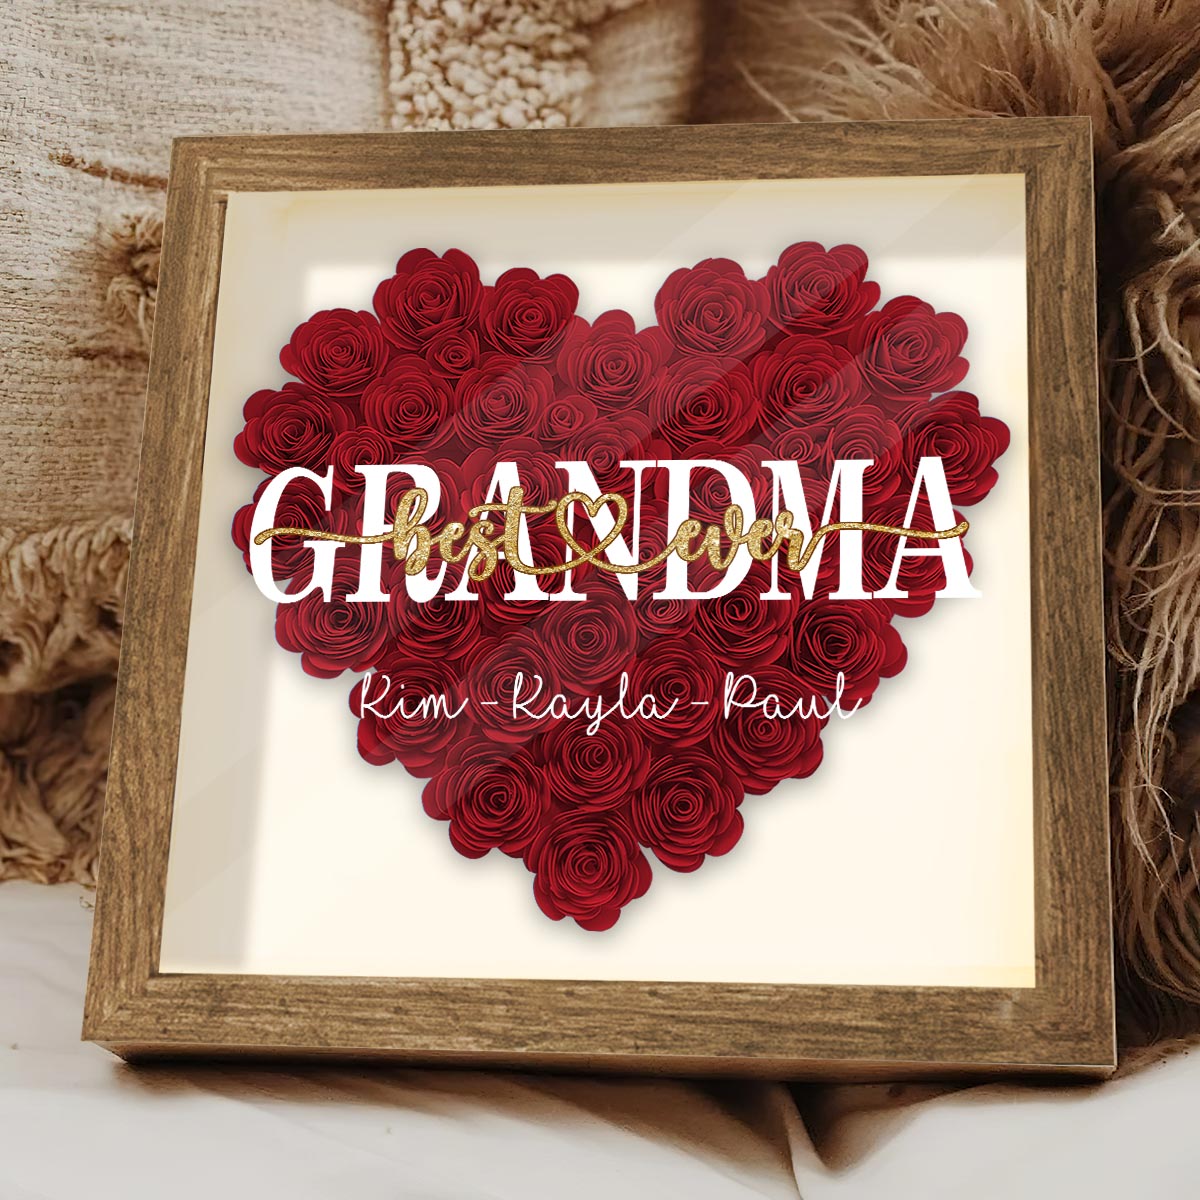 Discover Best Grandma Ever - Custom Gift For Family Members Flower Frame Box